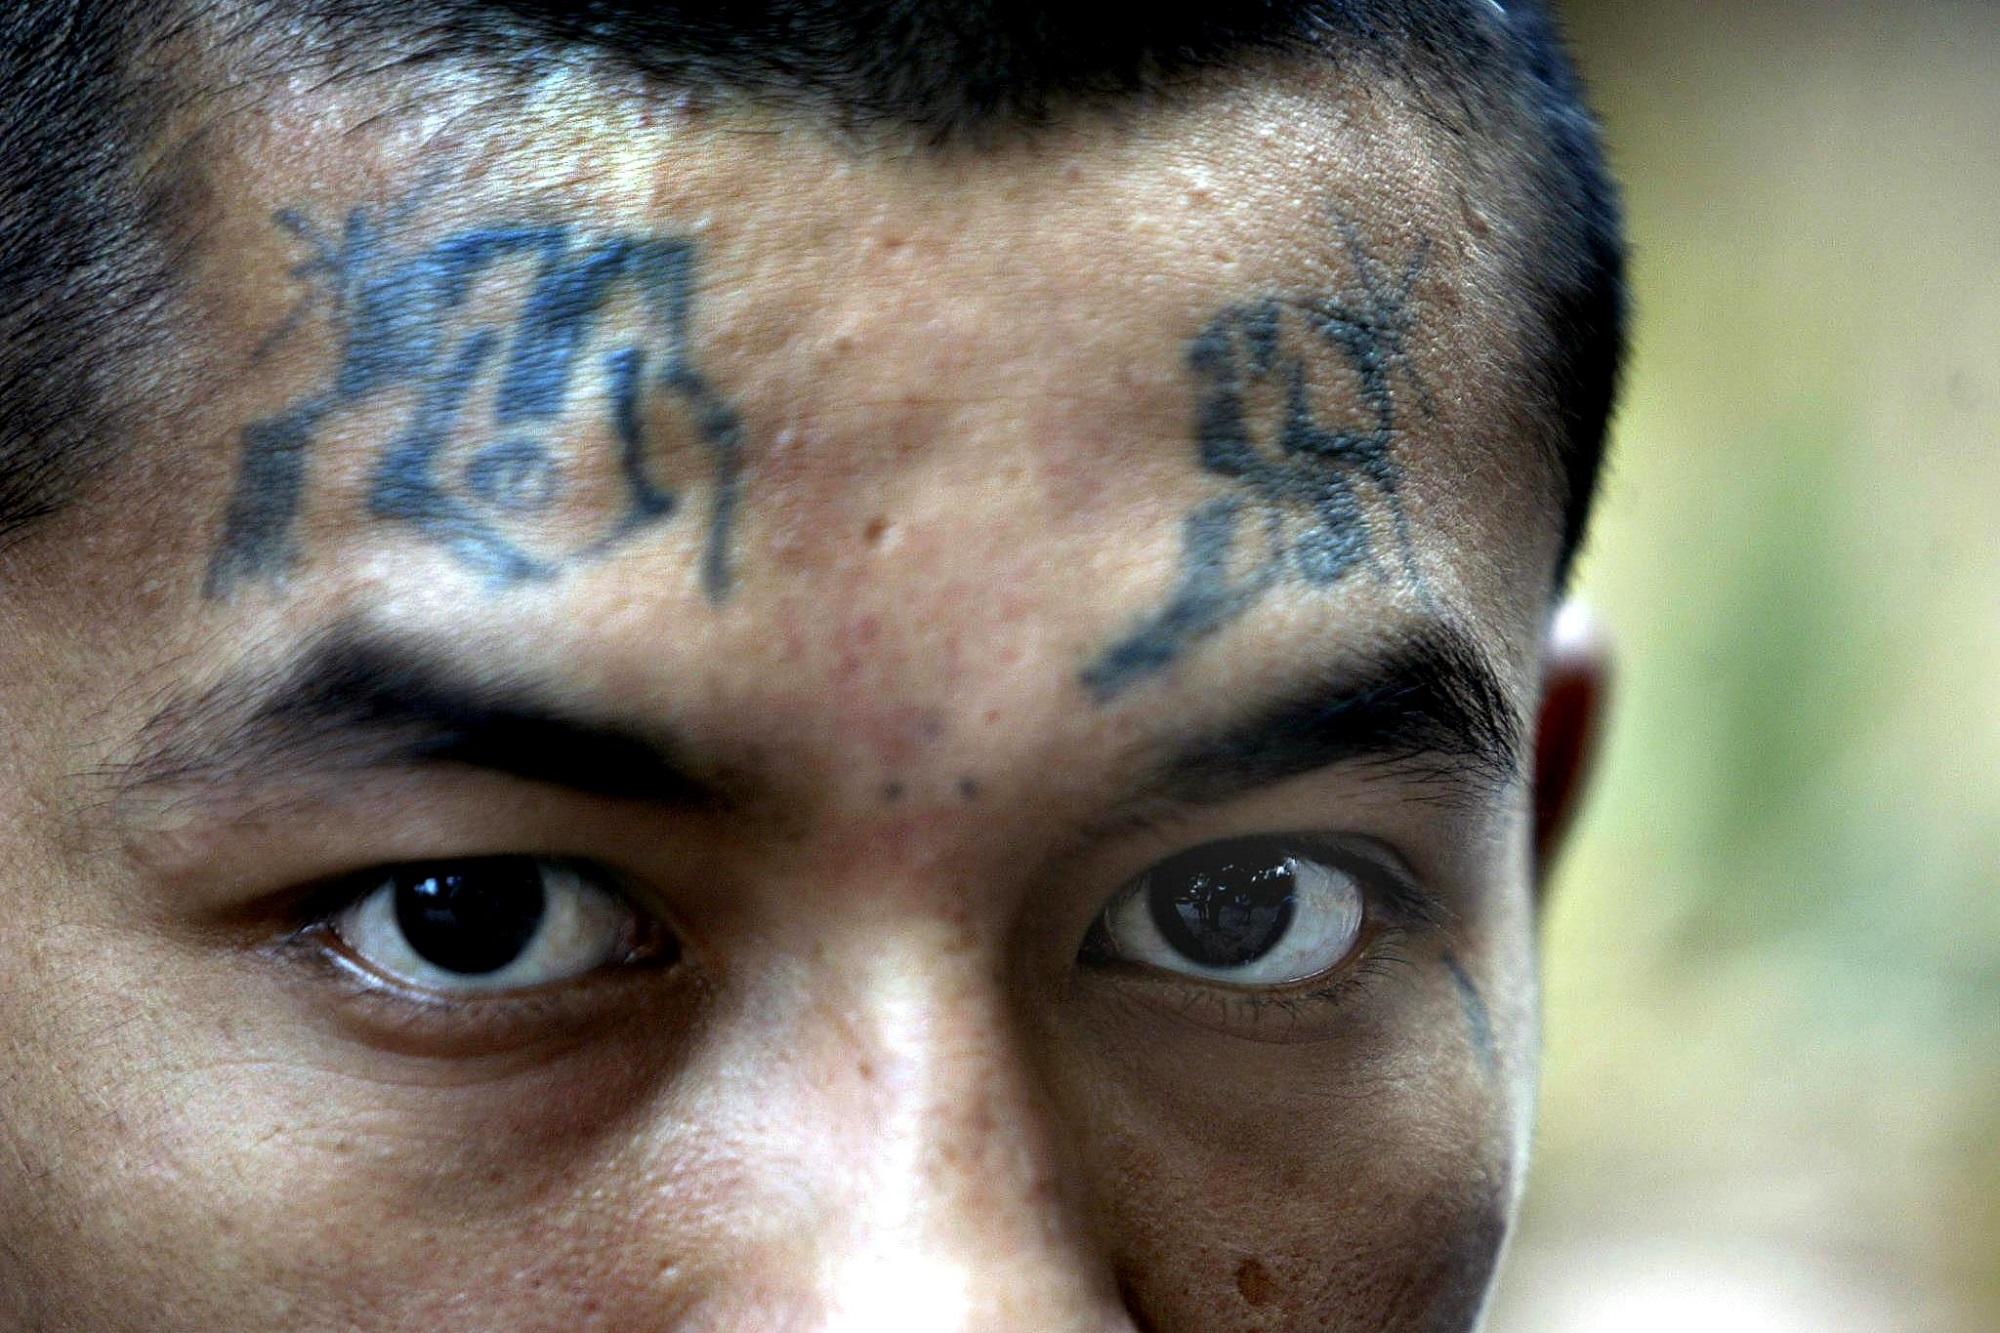 Fotografía de un activo de la Mara Salvatrucha tomada en San Salvador en marzo de 2005, cuando aún era relativamente habitual tatuarse el rostro para explicitar la pertenencia a la pandilla. Foto Yuri Cortez (AFP).